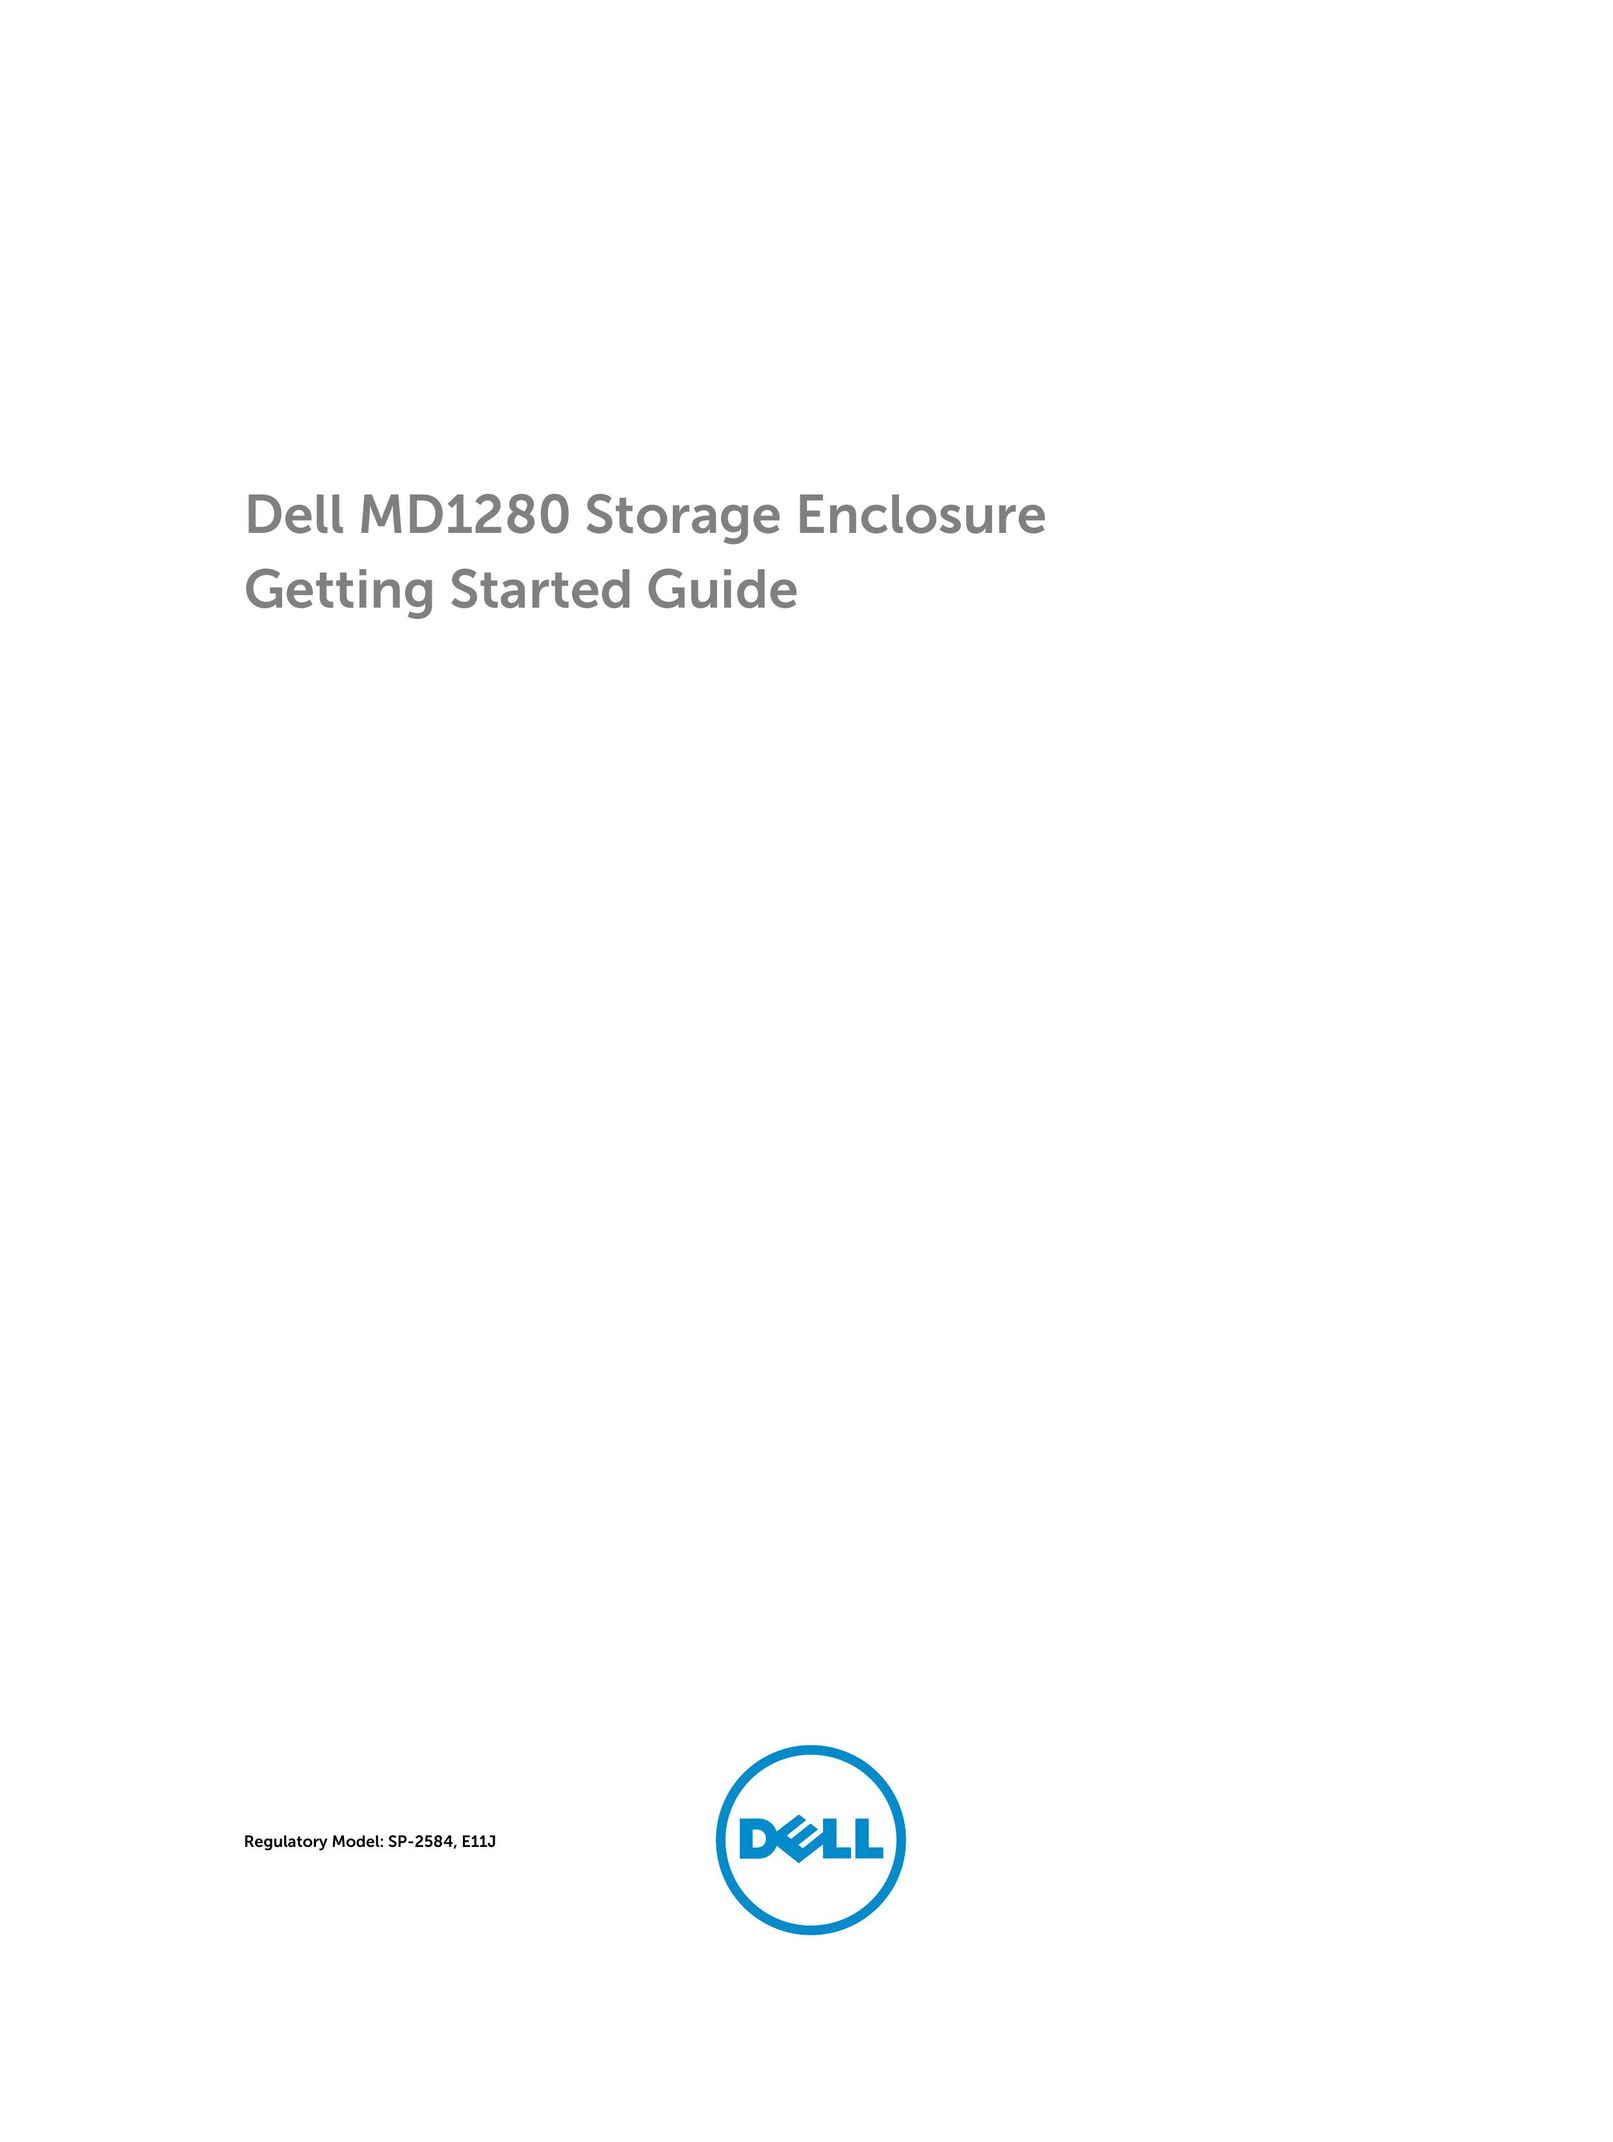 Dell E11J Tool Storage User Manual